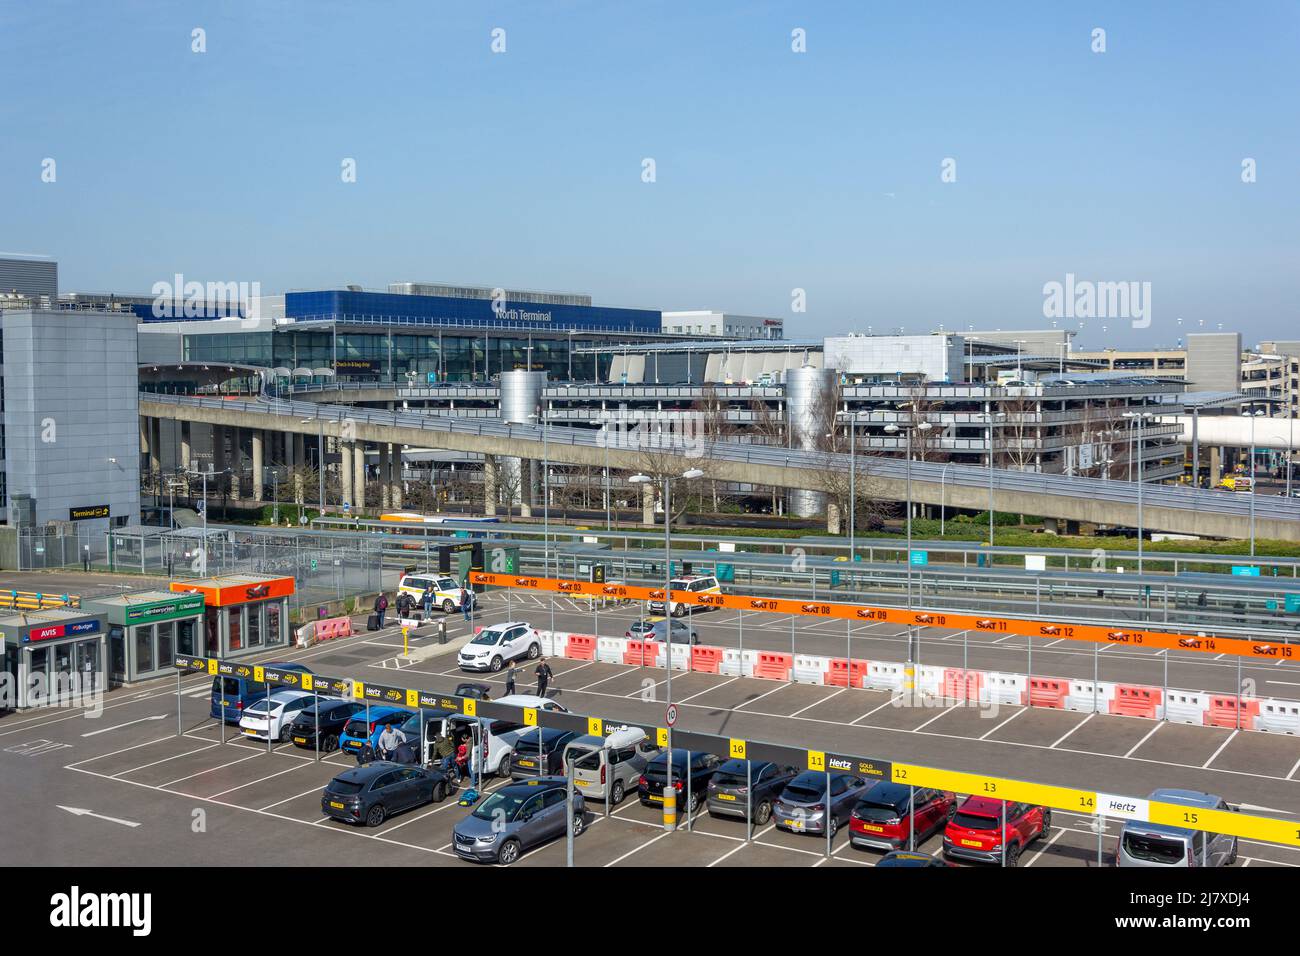 Parking de location de voitures à North terminal, aéroport de Londres Gatwick, Crawley, West Sussex, Angleterre, Royaume-Uni Banque D'Images